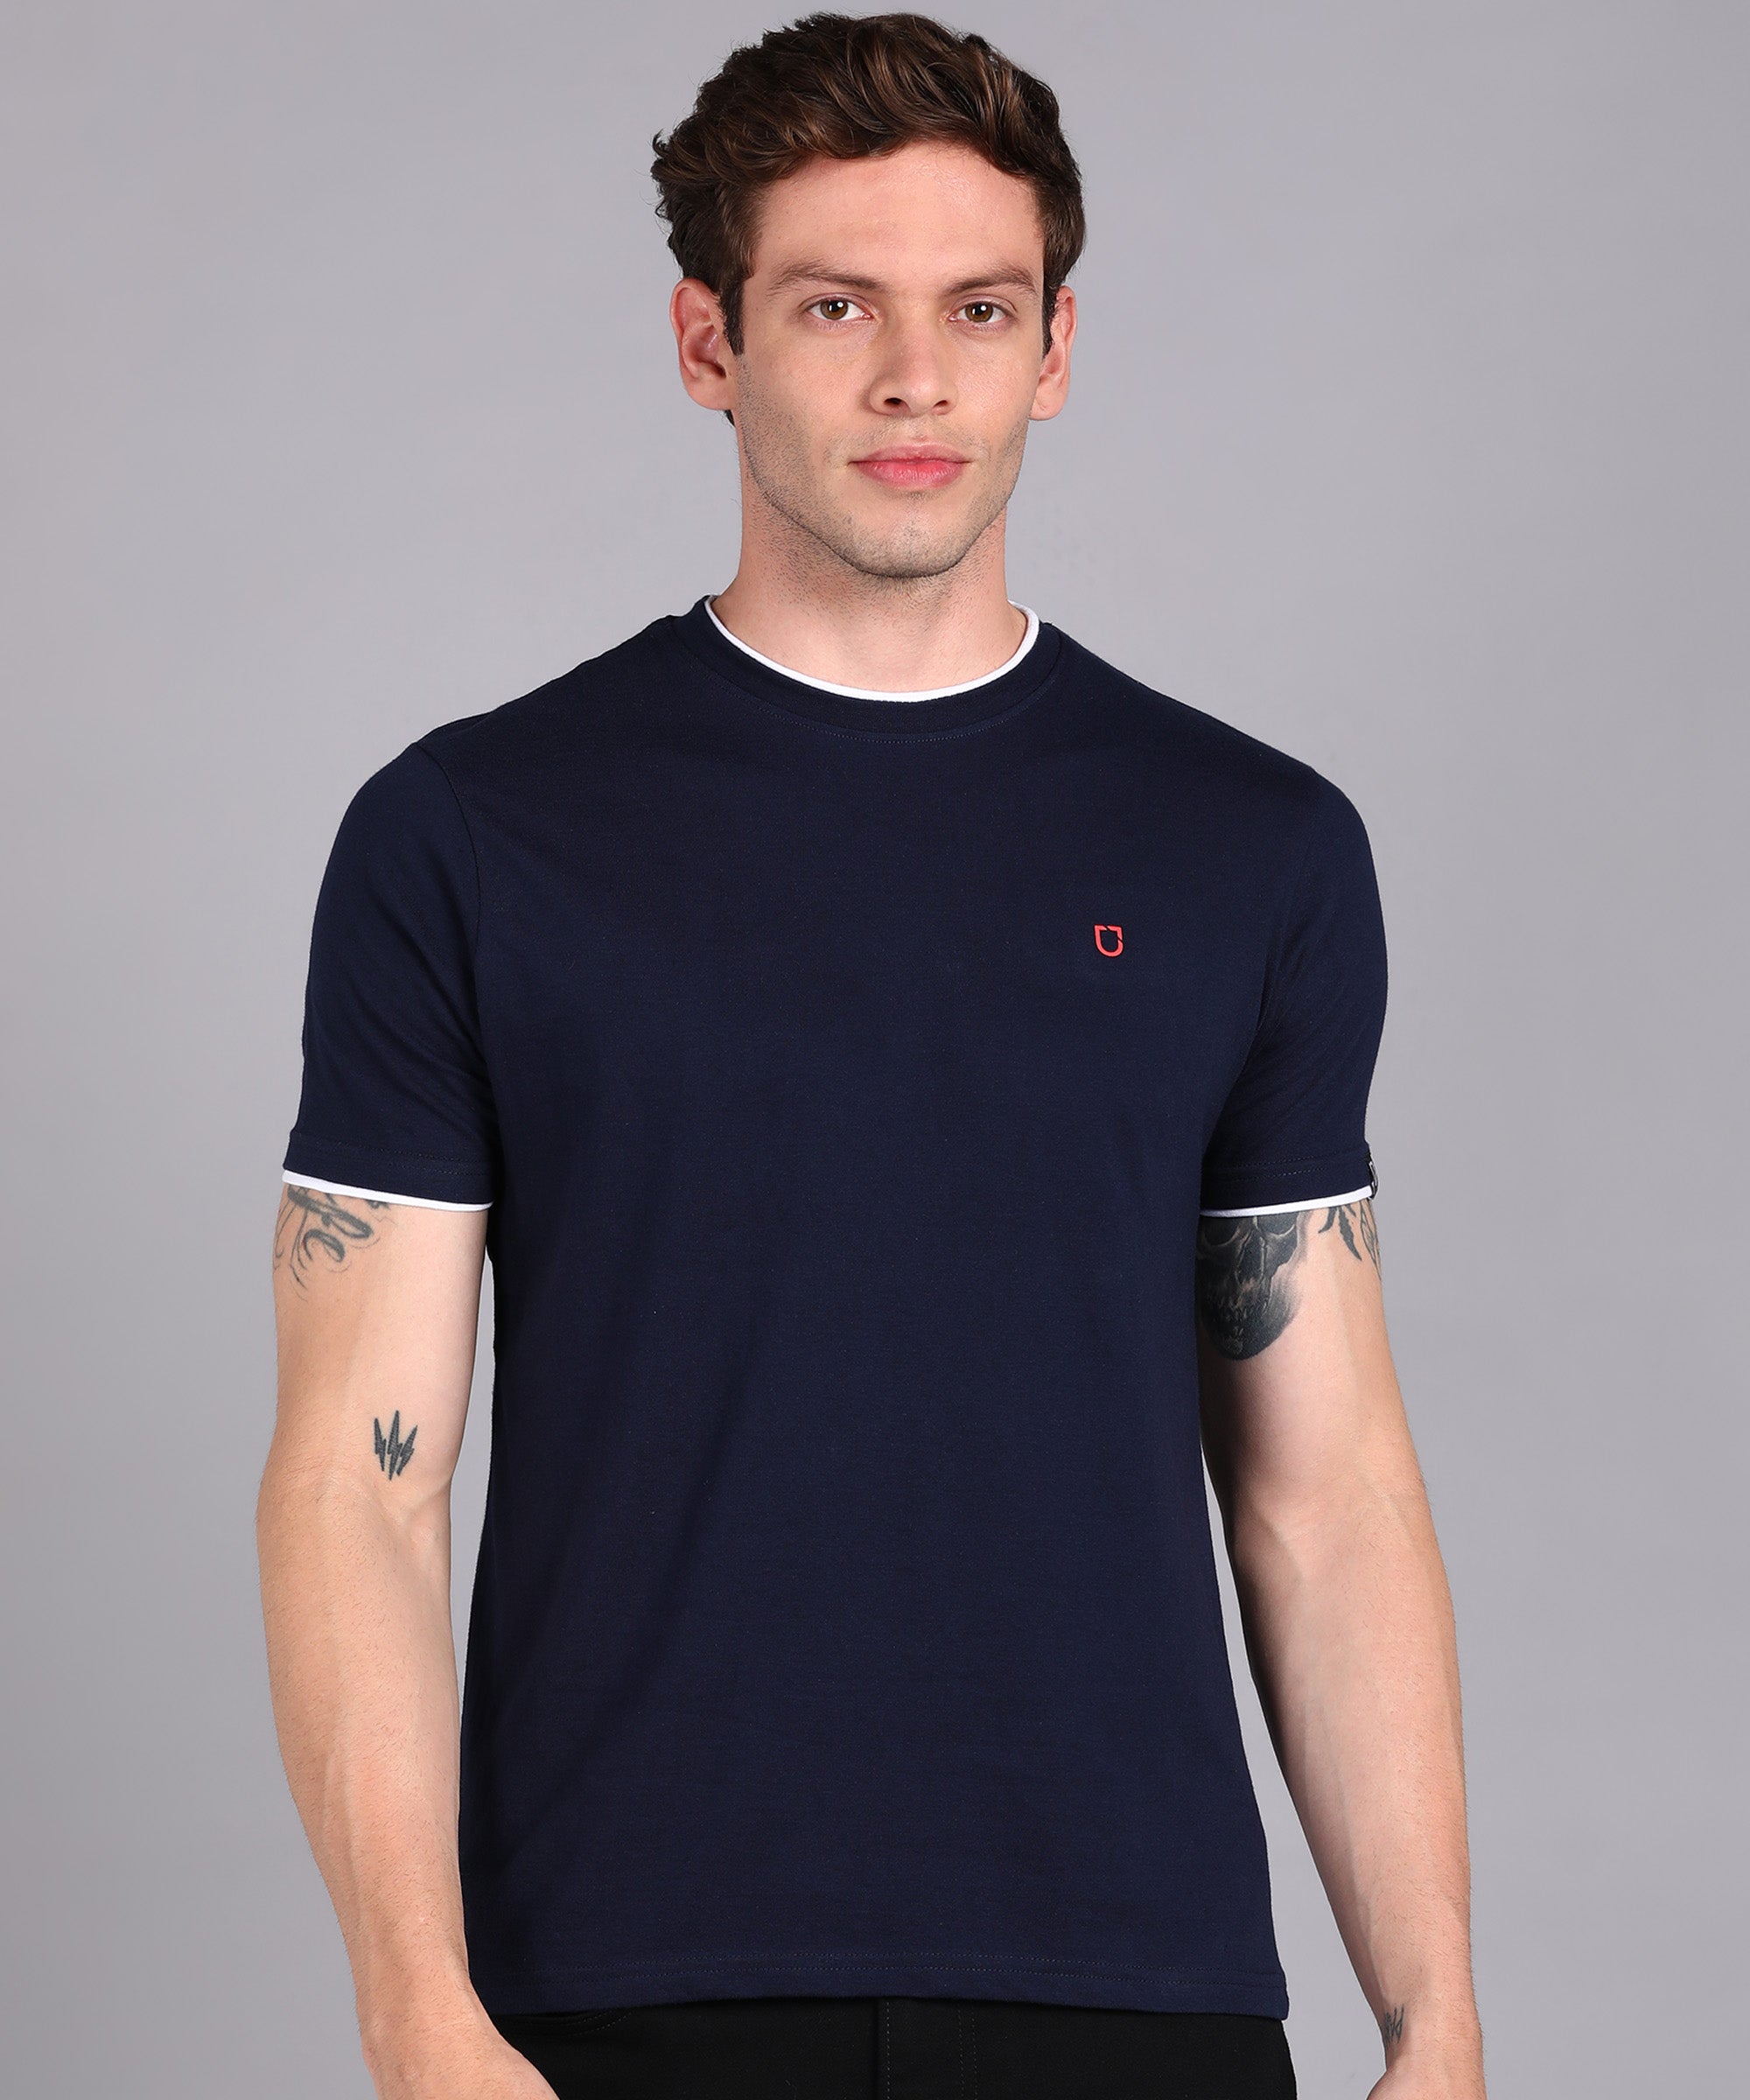 Men's Solid Navy Blue Round Neck Half Sleeve Slim Fit Cotton T-Shirt